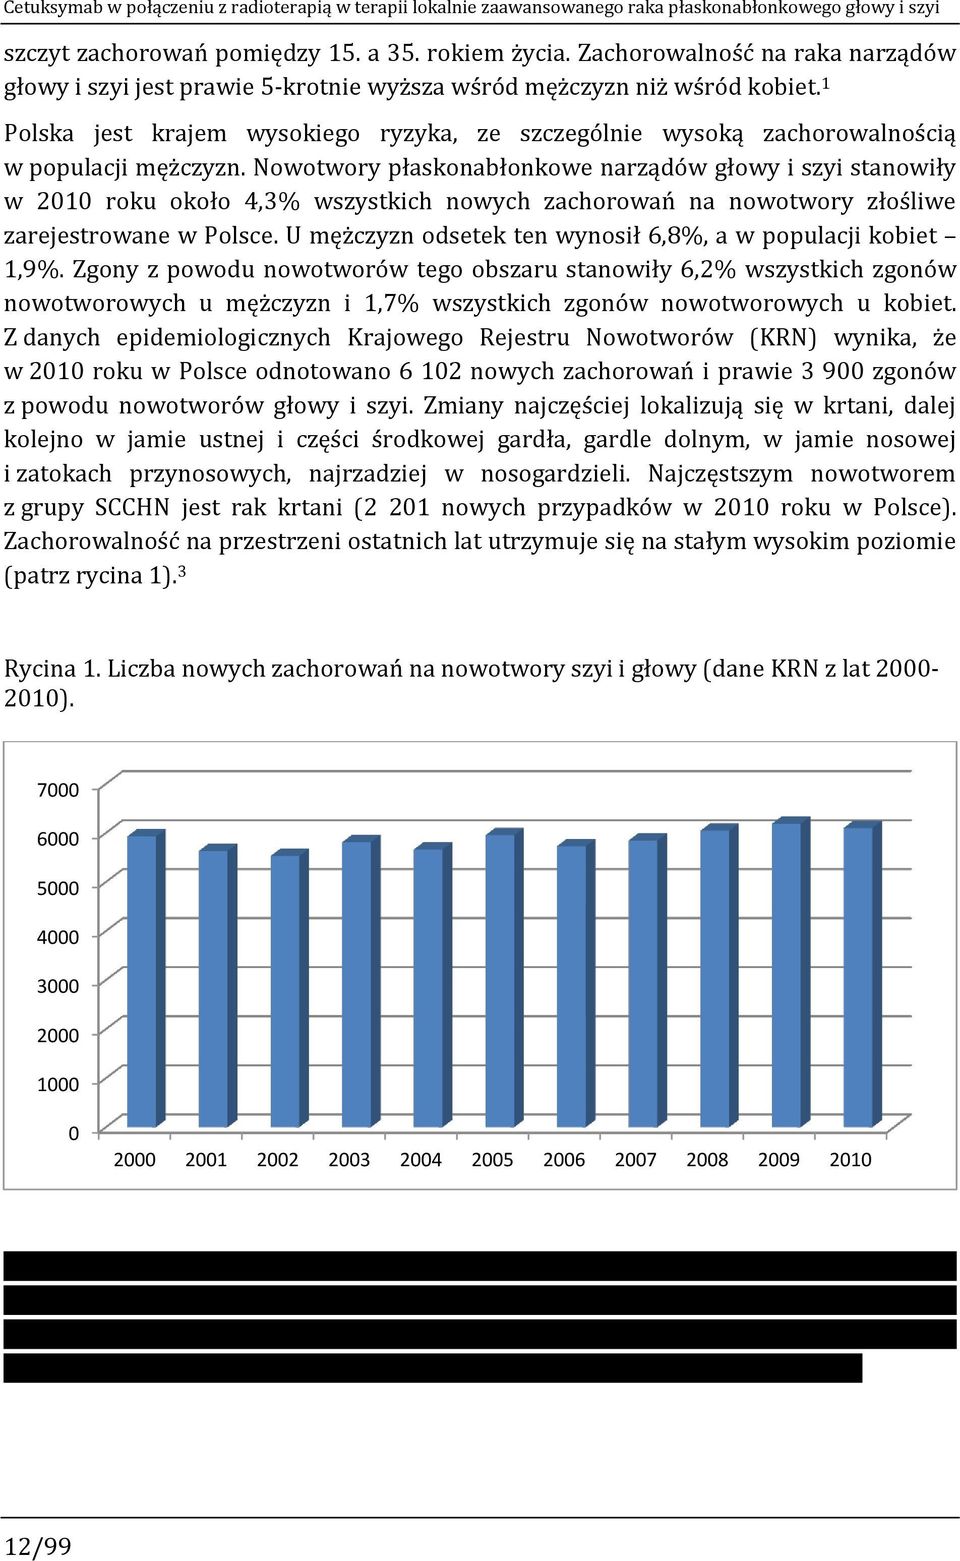 1 Polska jest krajem wysokiego ryzyka, ze szczególnie wysoką zachorowalnością w populacji mężczyzn.